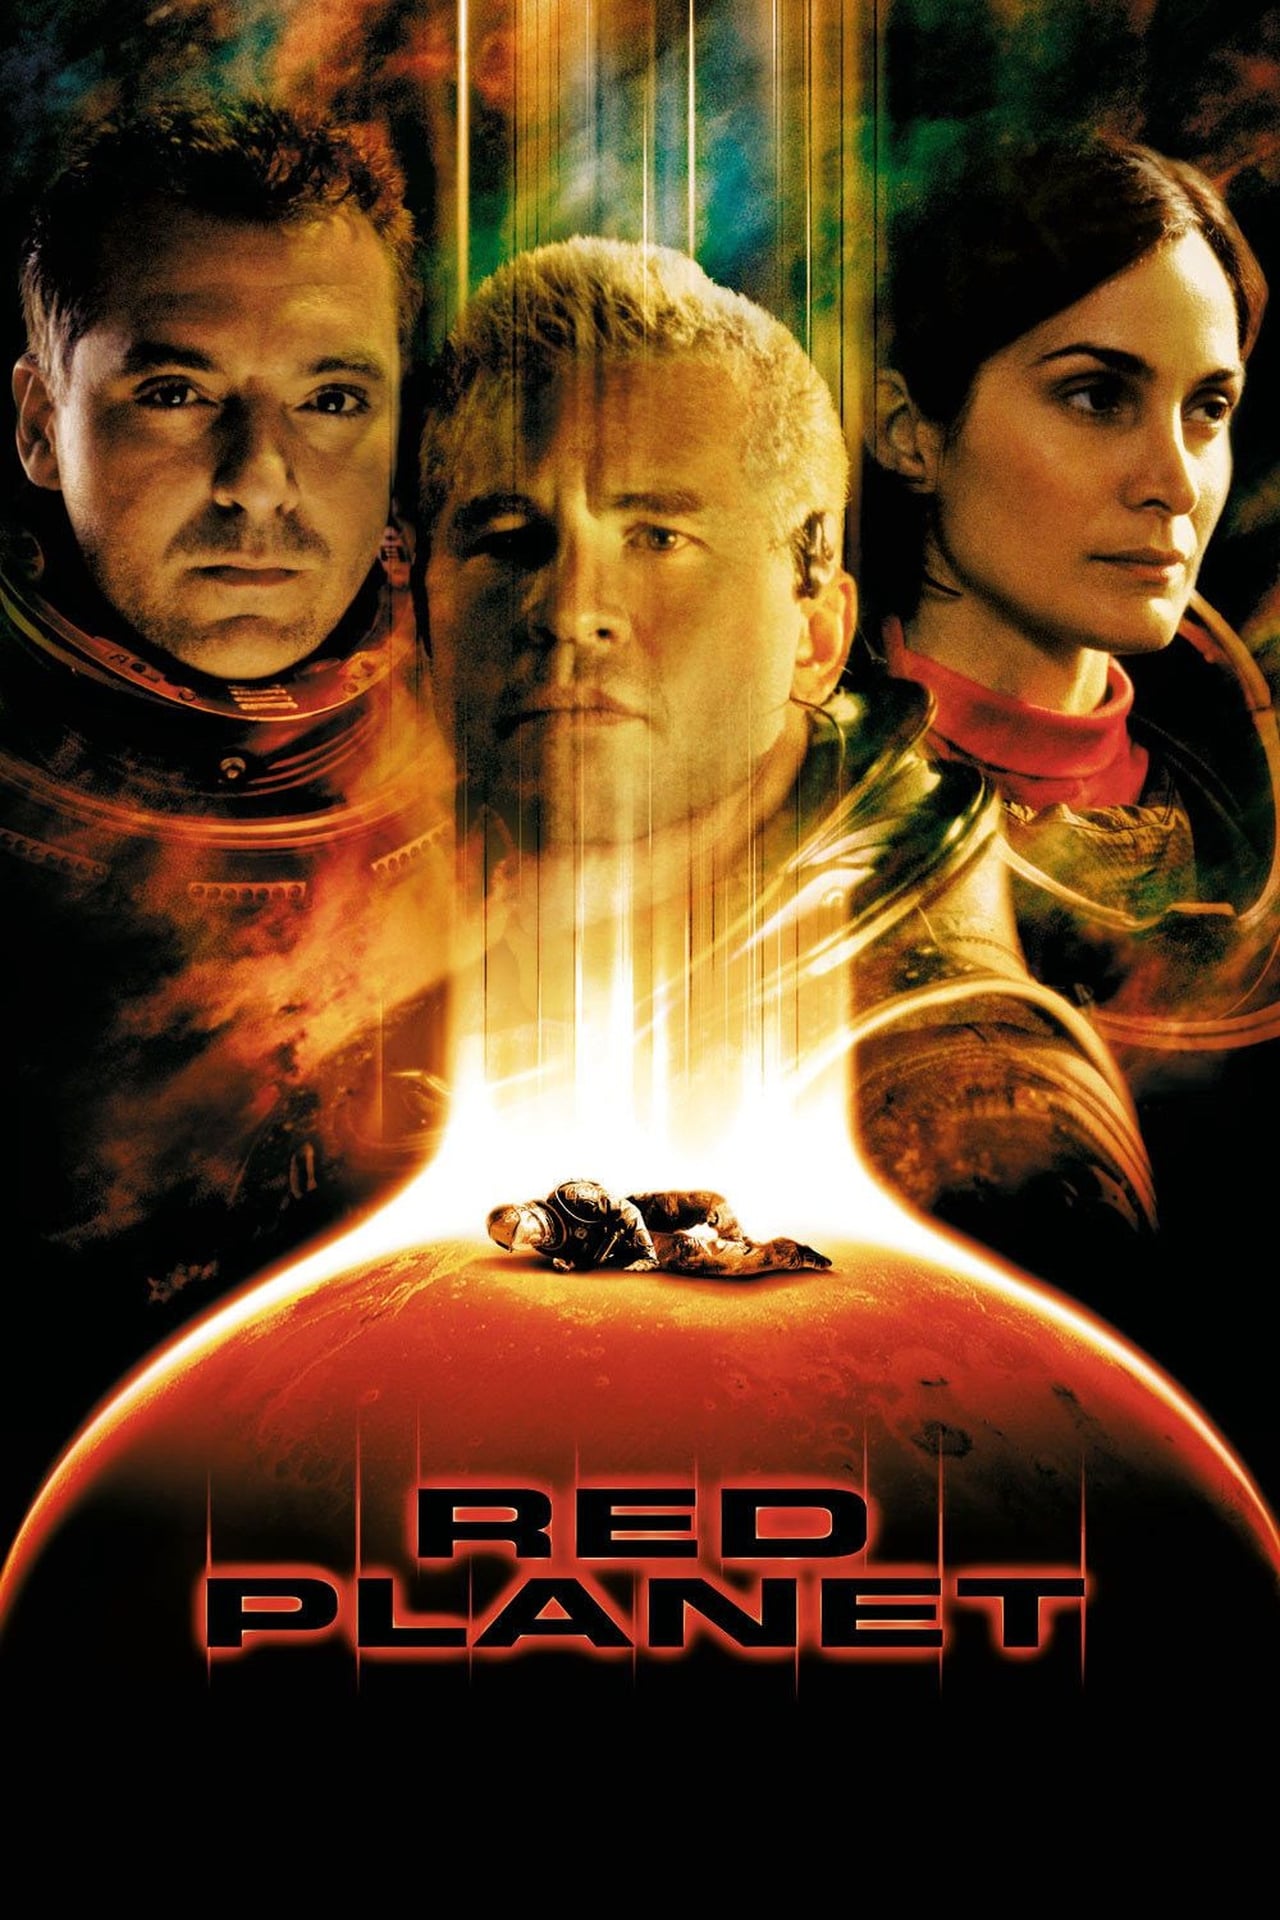 Red Planet (2000) 192Kbps 23.976Fps 48Khz 2.0Ch DigitalTV Turkish Audio TAC